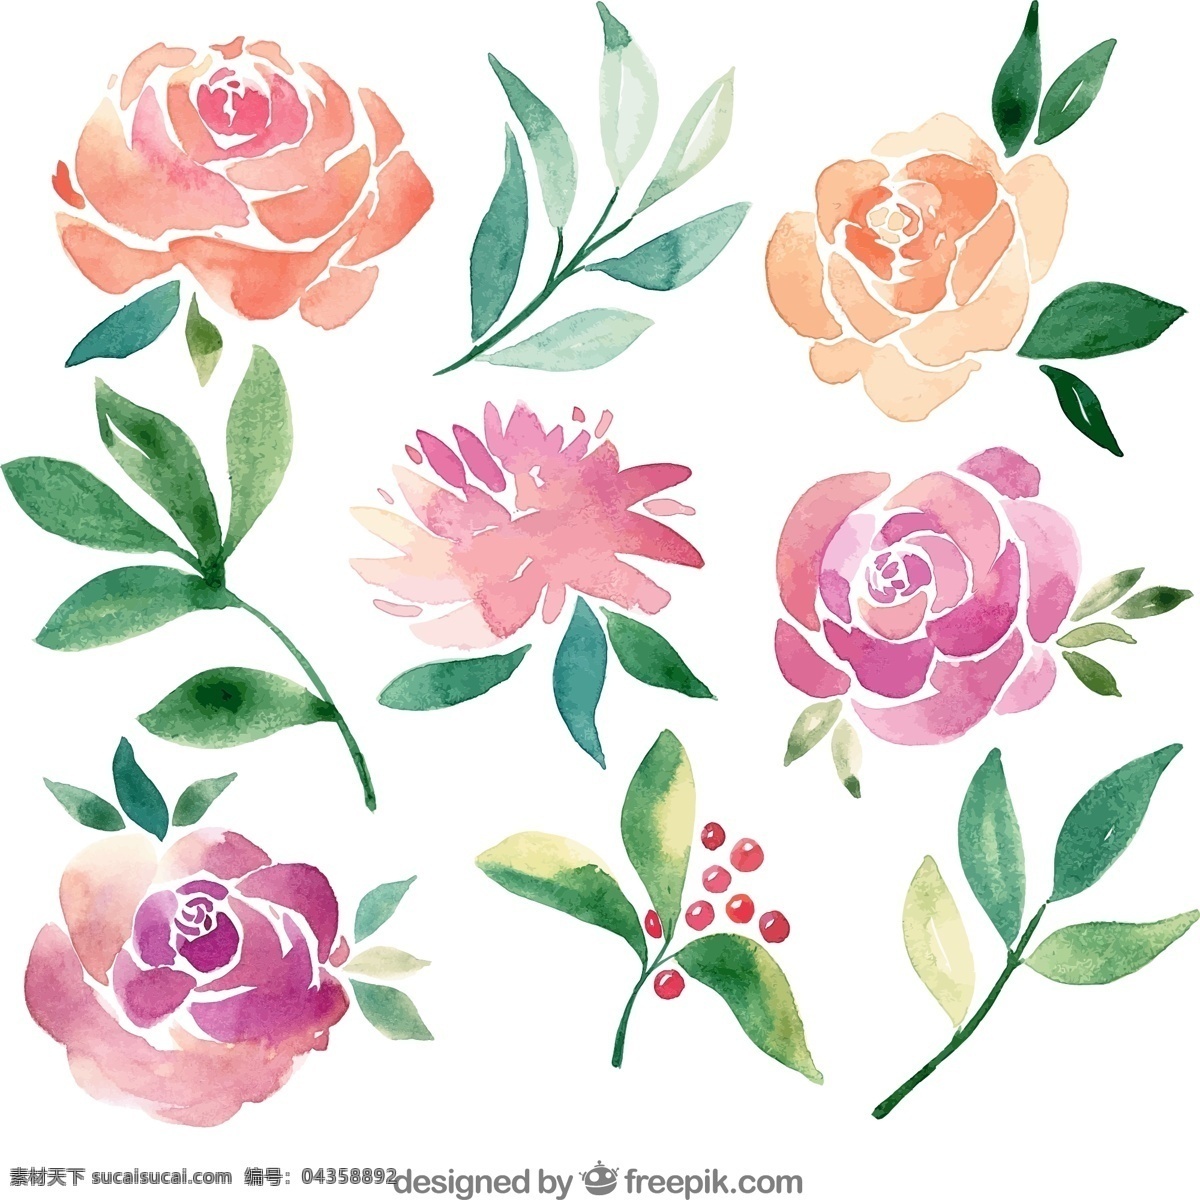 款 水彩 绘 花卉 叶子 矢量图 玫瑰花 水彩绘花卉 文化艺术 绘画书法